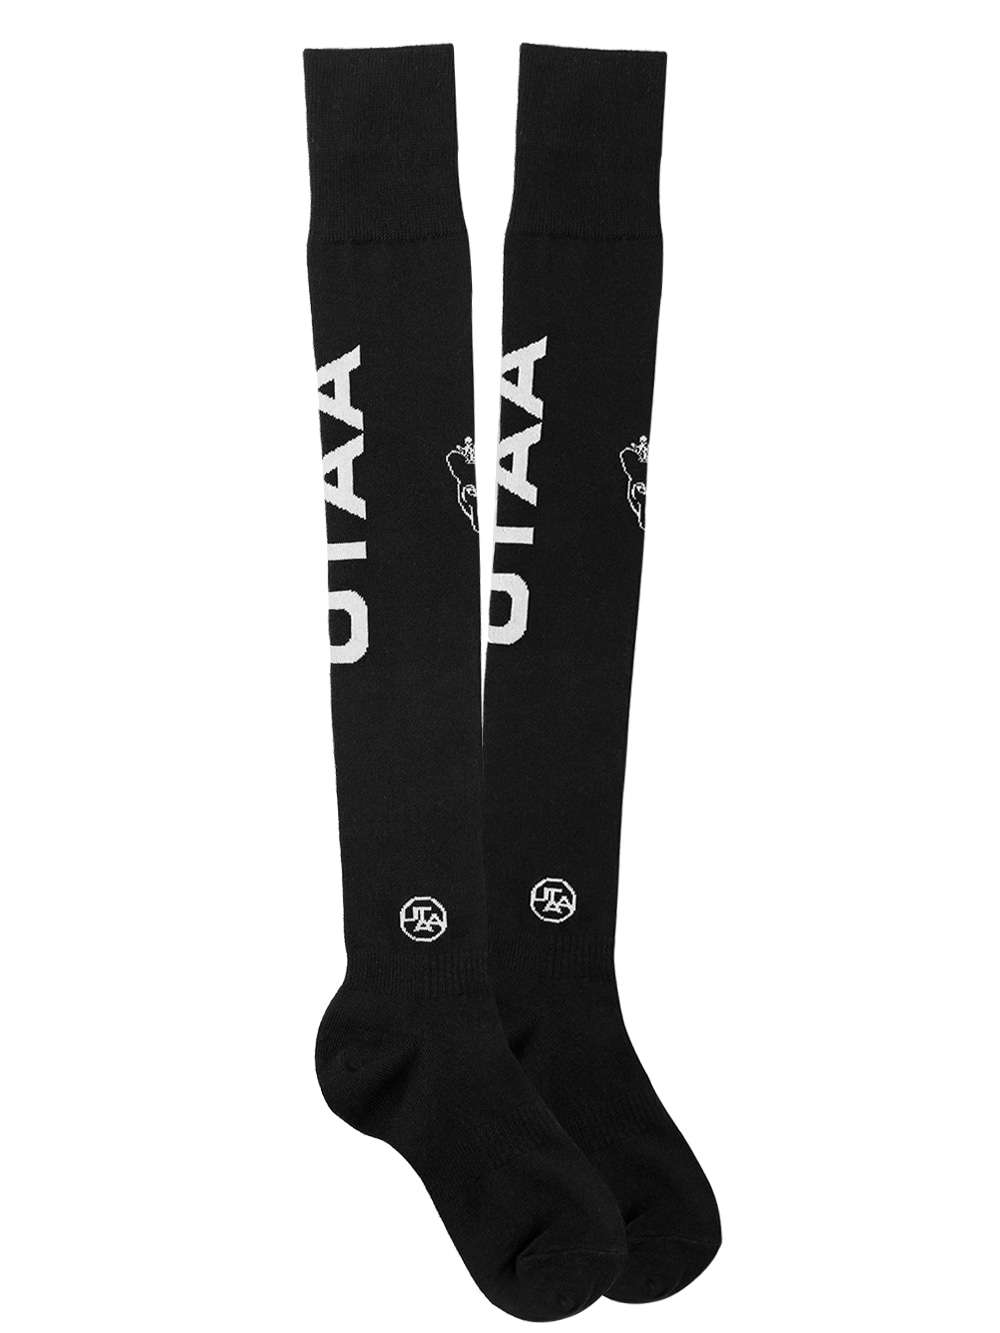 UTAA Panther Logo Over Knee Socks : Black (UB0GSF126BK)